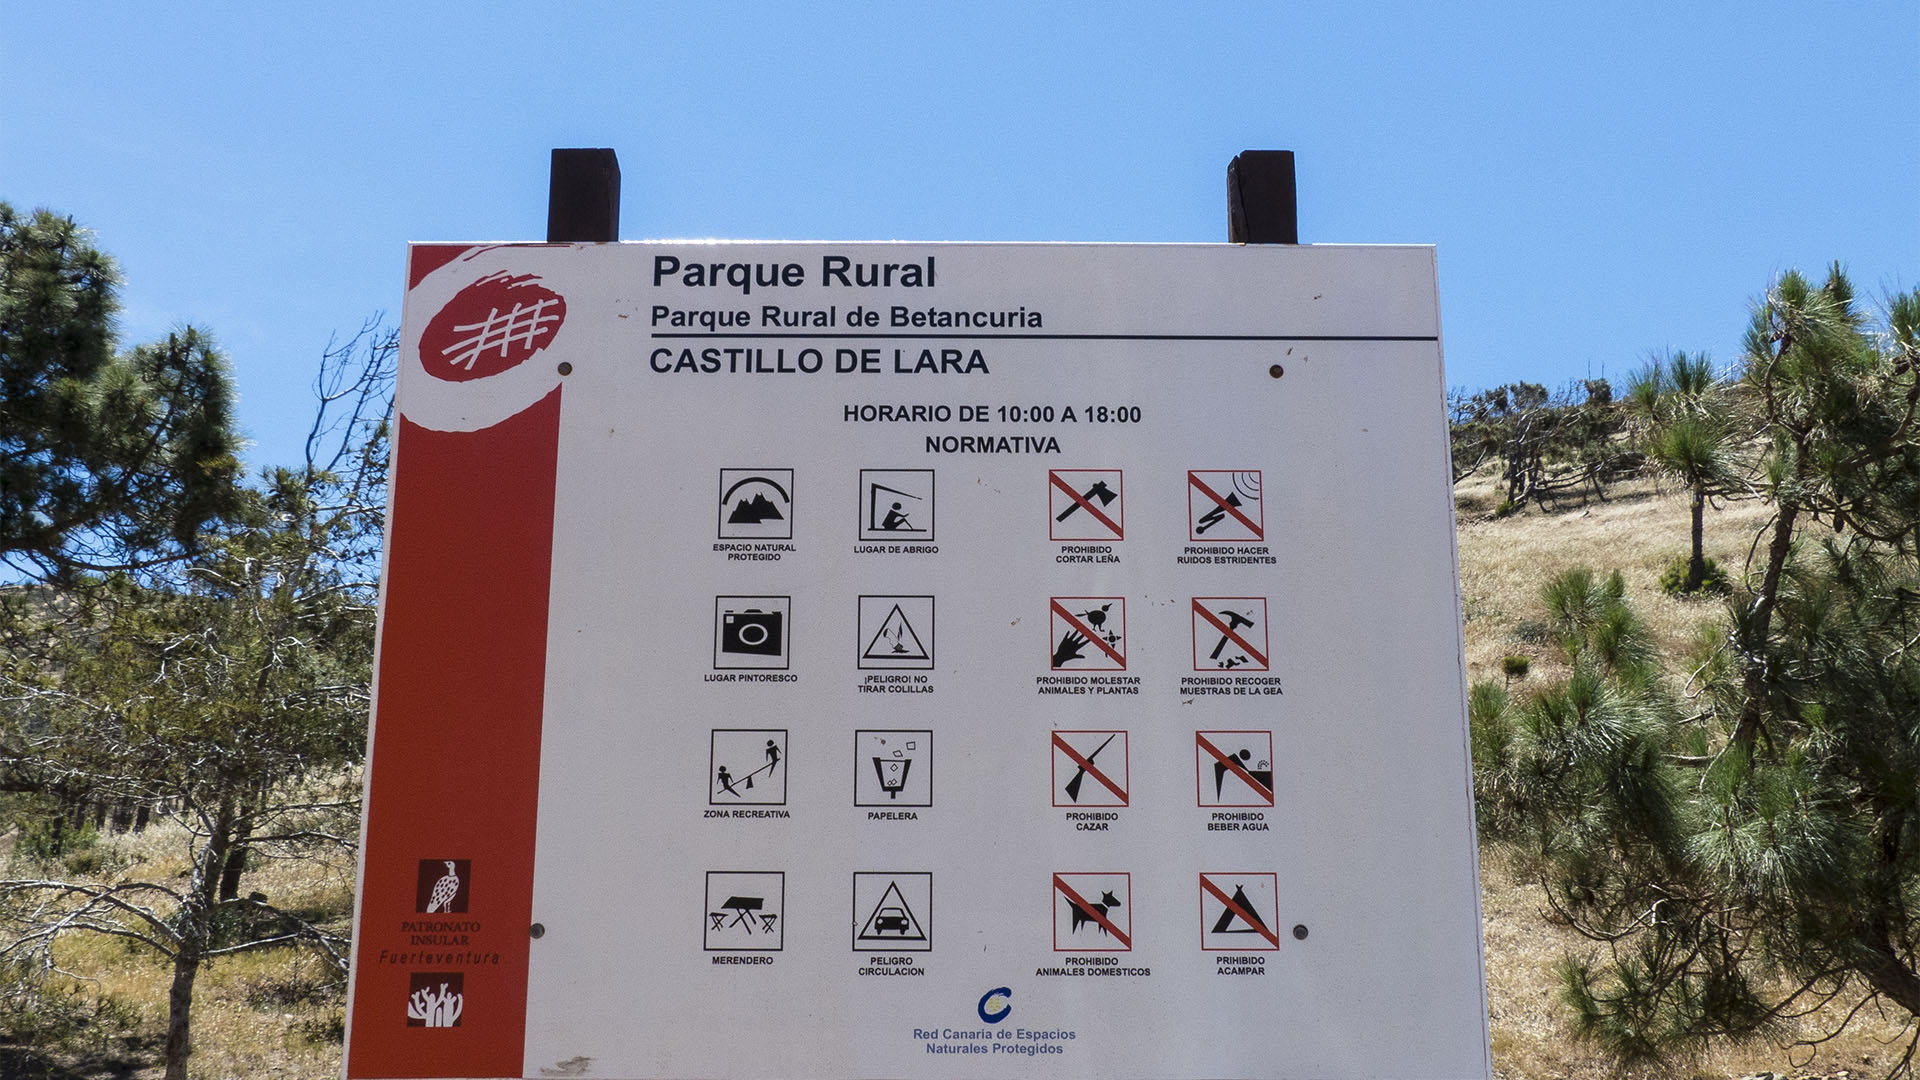 Sehenswürdigkeiten Fuerteventuras: Betancuria – Castillo de Lara area recreativa Betancuria